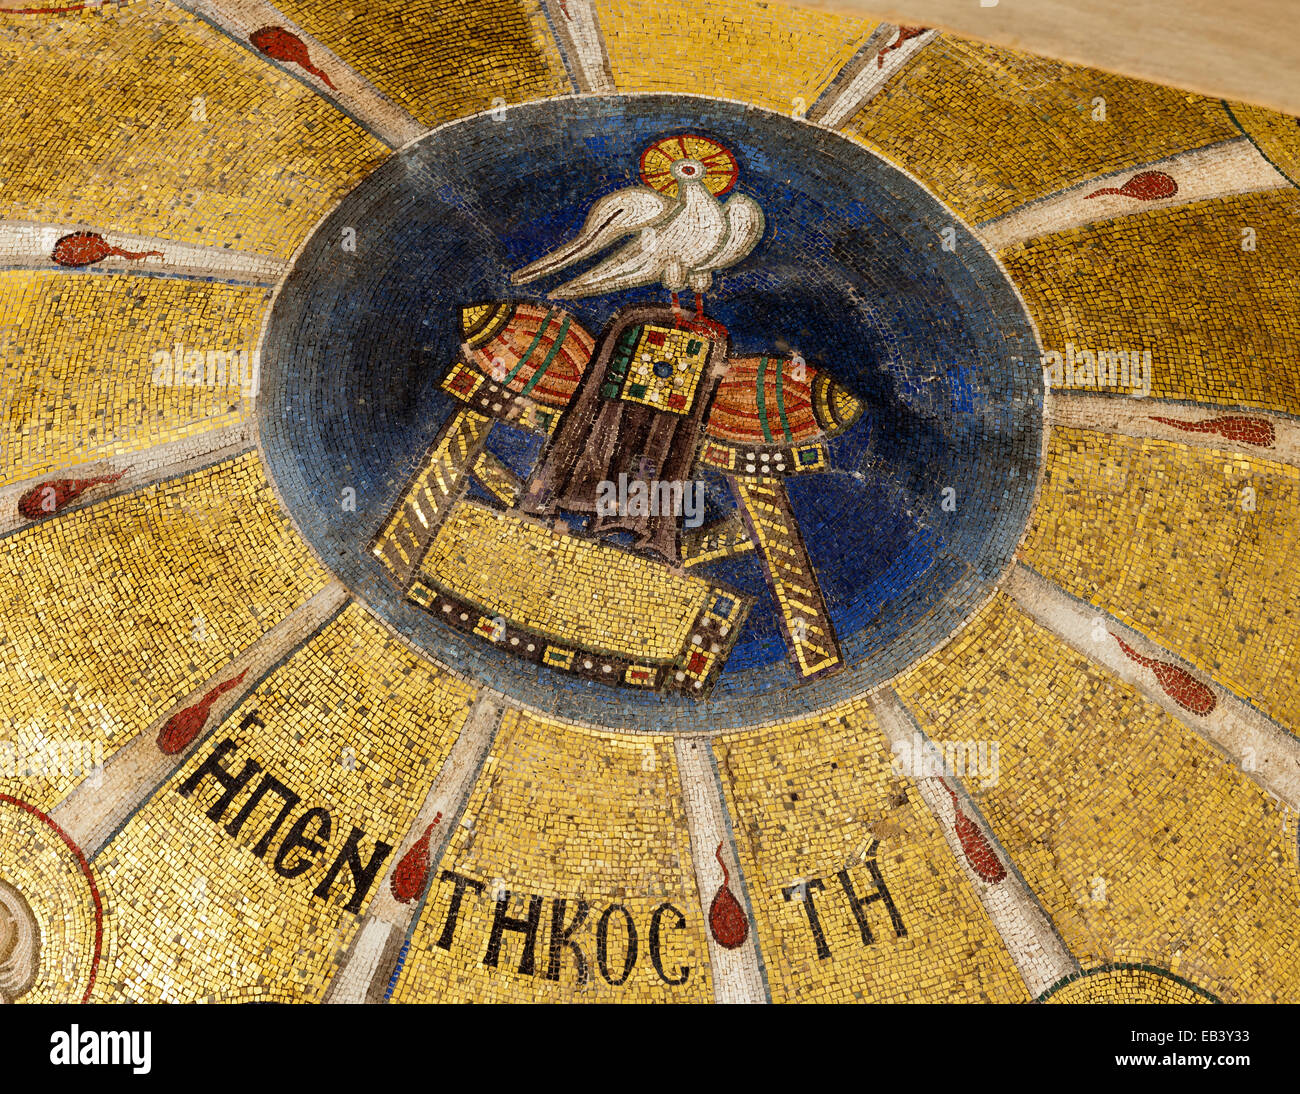 Interni splendidi dipinti e mosaici del patrimonio UNESCO monastero di Osios Loukas, Grecia Foto Stock